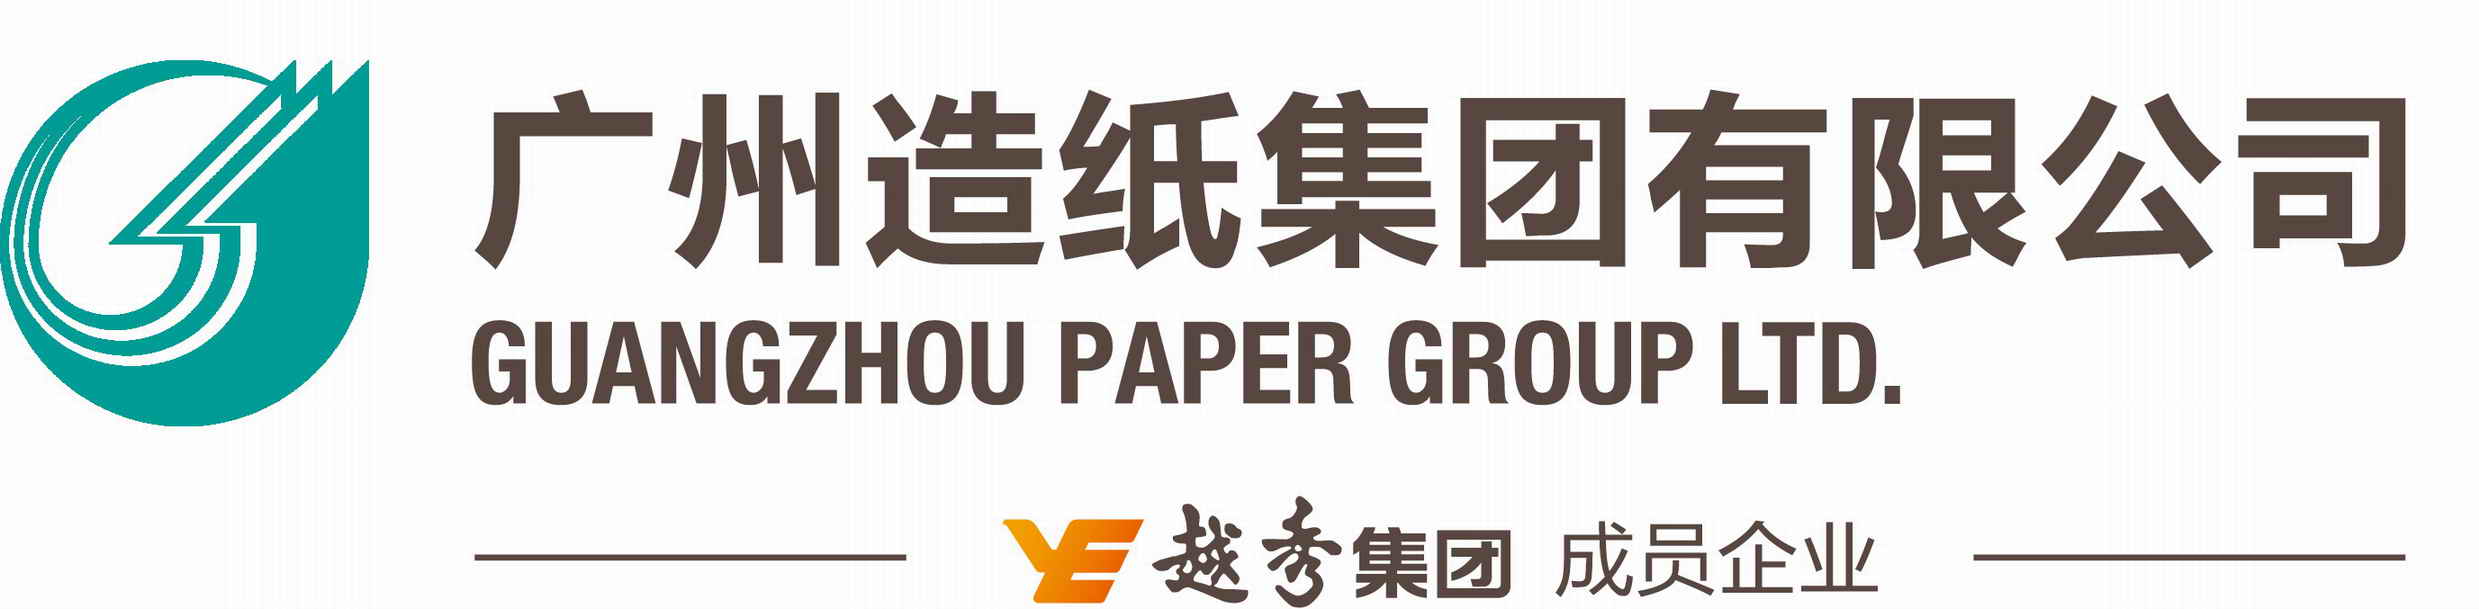 廣州造紙集團